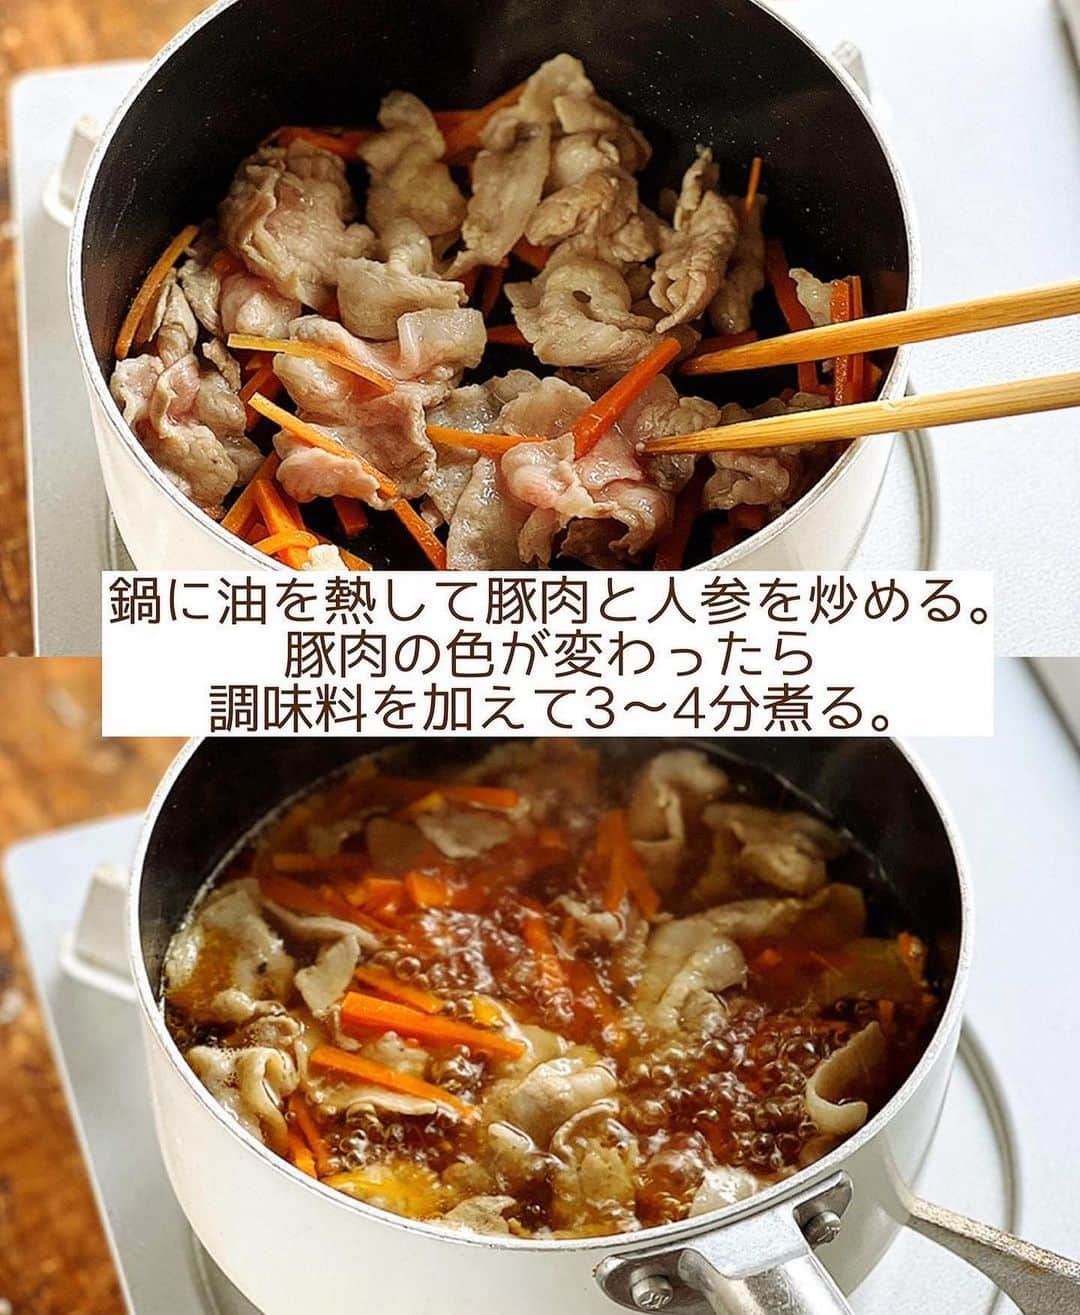 Mizuki【料理ブロガー・簡単レシピ】さんのインスタグラム写真 - (Mizuki【料理ブロガー・簡単レシピ】Instagram)「・韓国風スープごはん🍚 ⁡ ［#レシピ ］ ーーーーーーーーーーーー  豚肉と残り野菜のクッパ ーーーーーーーーーーーー ⁡ ⁡ ⁡ おはようございます☺️ ⁡ 今日ご紹介させていただくのは 韓国風スープかけごはん \ 豚肉と残り野菜のクッパ / (再掲載) ⁡ 野菜をたっぷり加えてヘルシーに やさしい味わいに仕上げました♩ これ1品でバランスよく食べられて 満足感もありますよ〜💕 ⁡ きのこや長ねぎ、乾燥わかめなど 具もアレンジ自在です✨ 韓国風といっても辛くないので よかったらお試しくださいね😋 ⁡ ⁡ ⁡ ⋱⋰ ⋱⋰ ⋱⋰ ⋱⋰ ⋱⋰ ⋱⋰ ⋱⋰ 📍簡単・時短・節約レシピ更新中  Threadsもこちらから▼ @mizuki_31cafe ⁡ 📍謎の暮らし＆変なライブ垢 @mizuki_kurashi ⋱⋰ ⋱⋰ ⋱⋰ ⋱⋰ ⋱⋰ ⋱⋰ ⋱⋰ ⁡ ⁡ ⁡ ＿＿＿＿＿＿＿＿＿＿＿＿＿＿＿＿＿＿＿ 【2人分】 豚バラ薄切り肉...100g ニラ...3本 人参...1/4本 (なくても)もやし...50g 溶き卵...1個分 ごま油...小1 ●水...400ml ●鶏がらスープ...大1 ●醤油・みりん...各大1/2 ごはん・ごま...各適量 ⁡ 1.豚肉とニラは3cm長さに切る。人参は細切りにする。 2.鍋にごま油を中火で熱し、豚肉と人参を炒める。豚肉の色が変わったら●を加え、人参がやわらかくなるまで3〜4分煮る。 3.ニラともやしを加え、再び煮立ったら溶き卵をまわし入れ、ふんわりしたら火を止める。 4.器にごはんを盛り、3をかけてごまを振る。 ￣￣￣￣￣￣￣￣￣￣￣￣￣￣￣￣￣￣￣ ⁡ ⁡ 《ポイント》 ♦︎溶き卵を加えたら、混ぜずに仕上げます♩ ♦︎ごはんは少なめに盛るのがおすすめです♩ ⁡ ⁡ ⁡ ⁡ ⁡ ⁡ ⋱⋰ ⋱⋰ ⋱⋰ ⋱⋰ ⋱⋰ ⋱⋰ ⋱⋰  愛用している調理器具・器など   #楽天ROOMに載せてます ‎𐩢𐩺  (ハイライトから飛べます🕊️) ⋱⋰ ⋱⋰ ⋱⋰ ⋱⋰ ⋱⋰ ⋱⋰ ⋱⋰ ⁡ ⁡ ⁡ ⁡ ⁡ ✼••┈┈┈┈┈••✼••┈┈┈┈┈••✼ 今日のごはんこれに決まり！ ‎𓊆#Mizukiのレシピノート 500品𓊇 ✼••┈┈┈┈┈••✼••┈┈┈┈┈••✼ ⁡ ˗ˏˋ おかげさまで25万部突破 ˎˊ˗ 料理レシピ本大賞準大賞を受賞しました✨ ⁡ 6000点の中からレシピを厳選し まさかの【500レシピ掲載】 肉や魚のメインおかずはもちろん 副菜、丼、麺、スープ、お菓子 ハレの日のレシピ、鍋のレシピまで 全てこの一冊で完結 𓌉◯𓇋 (全国の書店・ネット書店で発売中) ⁡ ⁡ ⁡ ⁡ ⁡ #クッパ  #スープ  #スープレシピ #卵料理 #もやしレシピ #スープかけごはん #韓国料理 #韓国グルメ #節約料理  #簡単料理  #時短料理 #mizukiレシピ  #時短レシピ #節約レシピ #簡単レシピ」8月19日 6時59分 - mizuki_31cafe